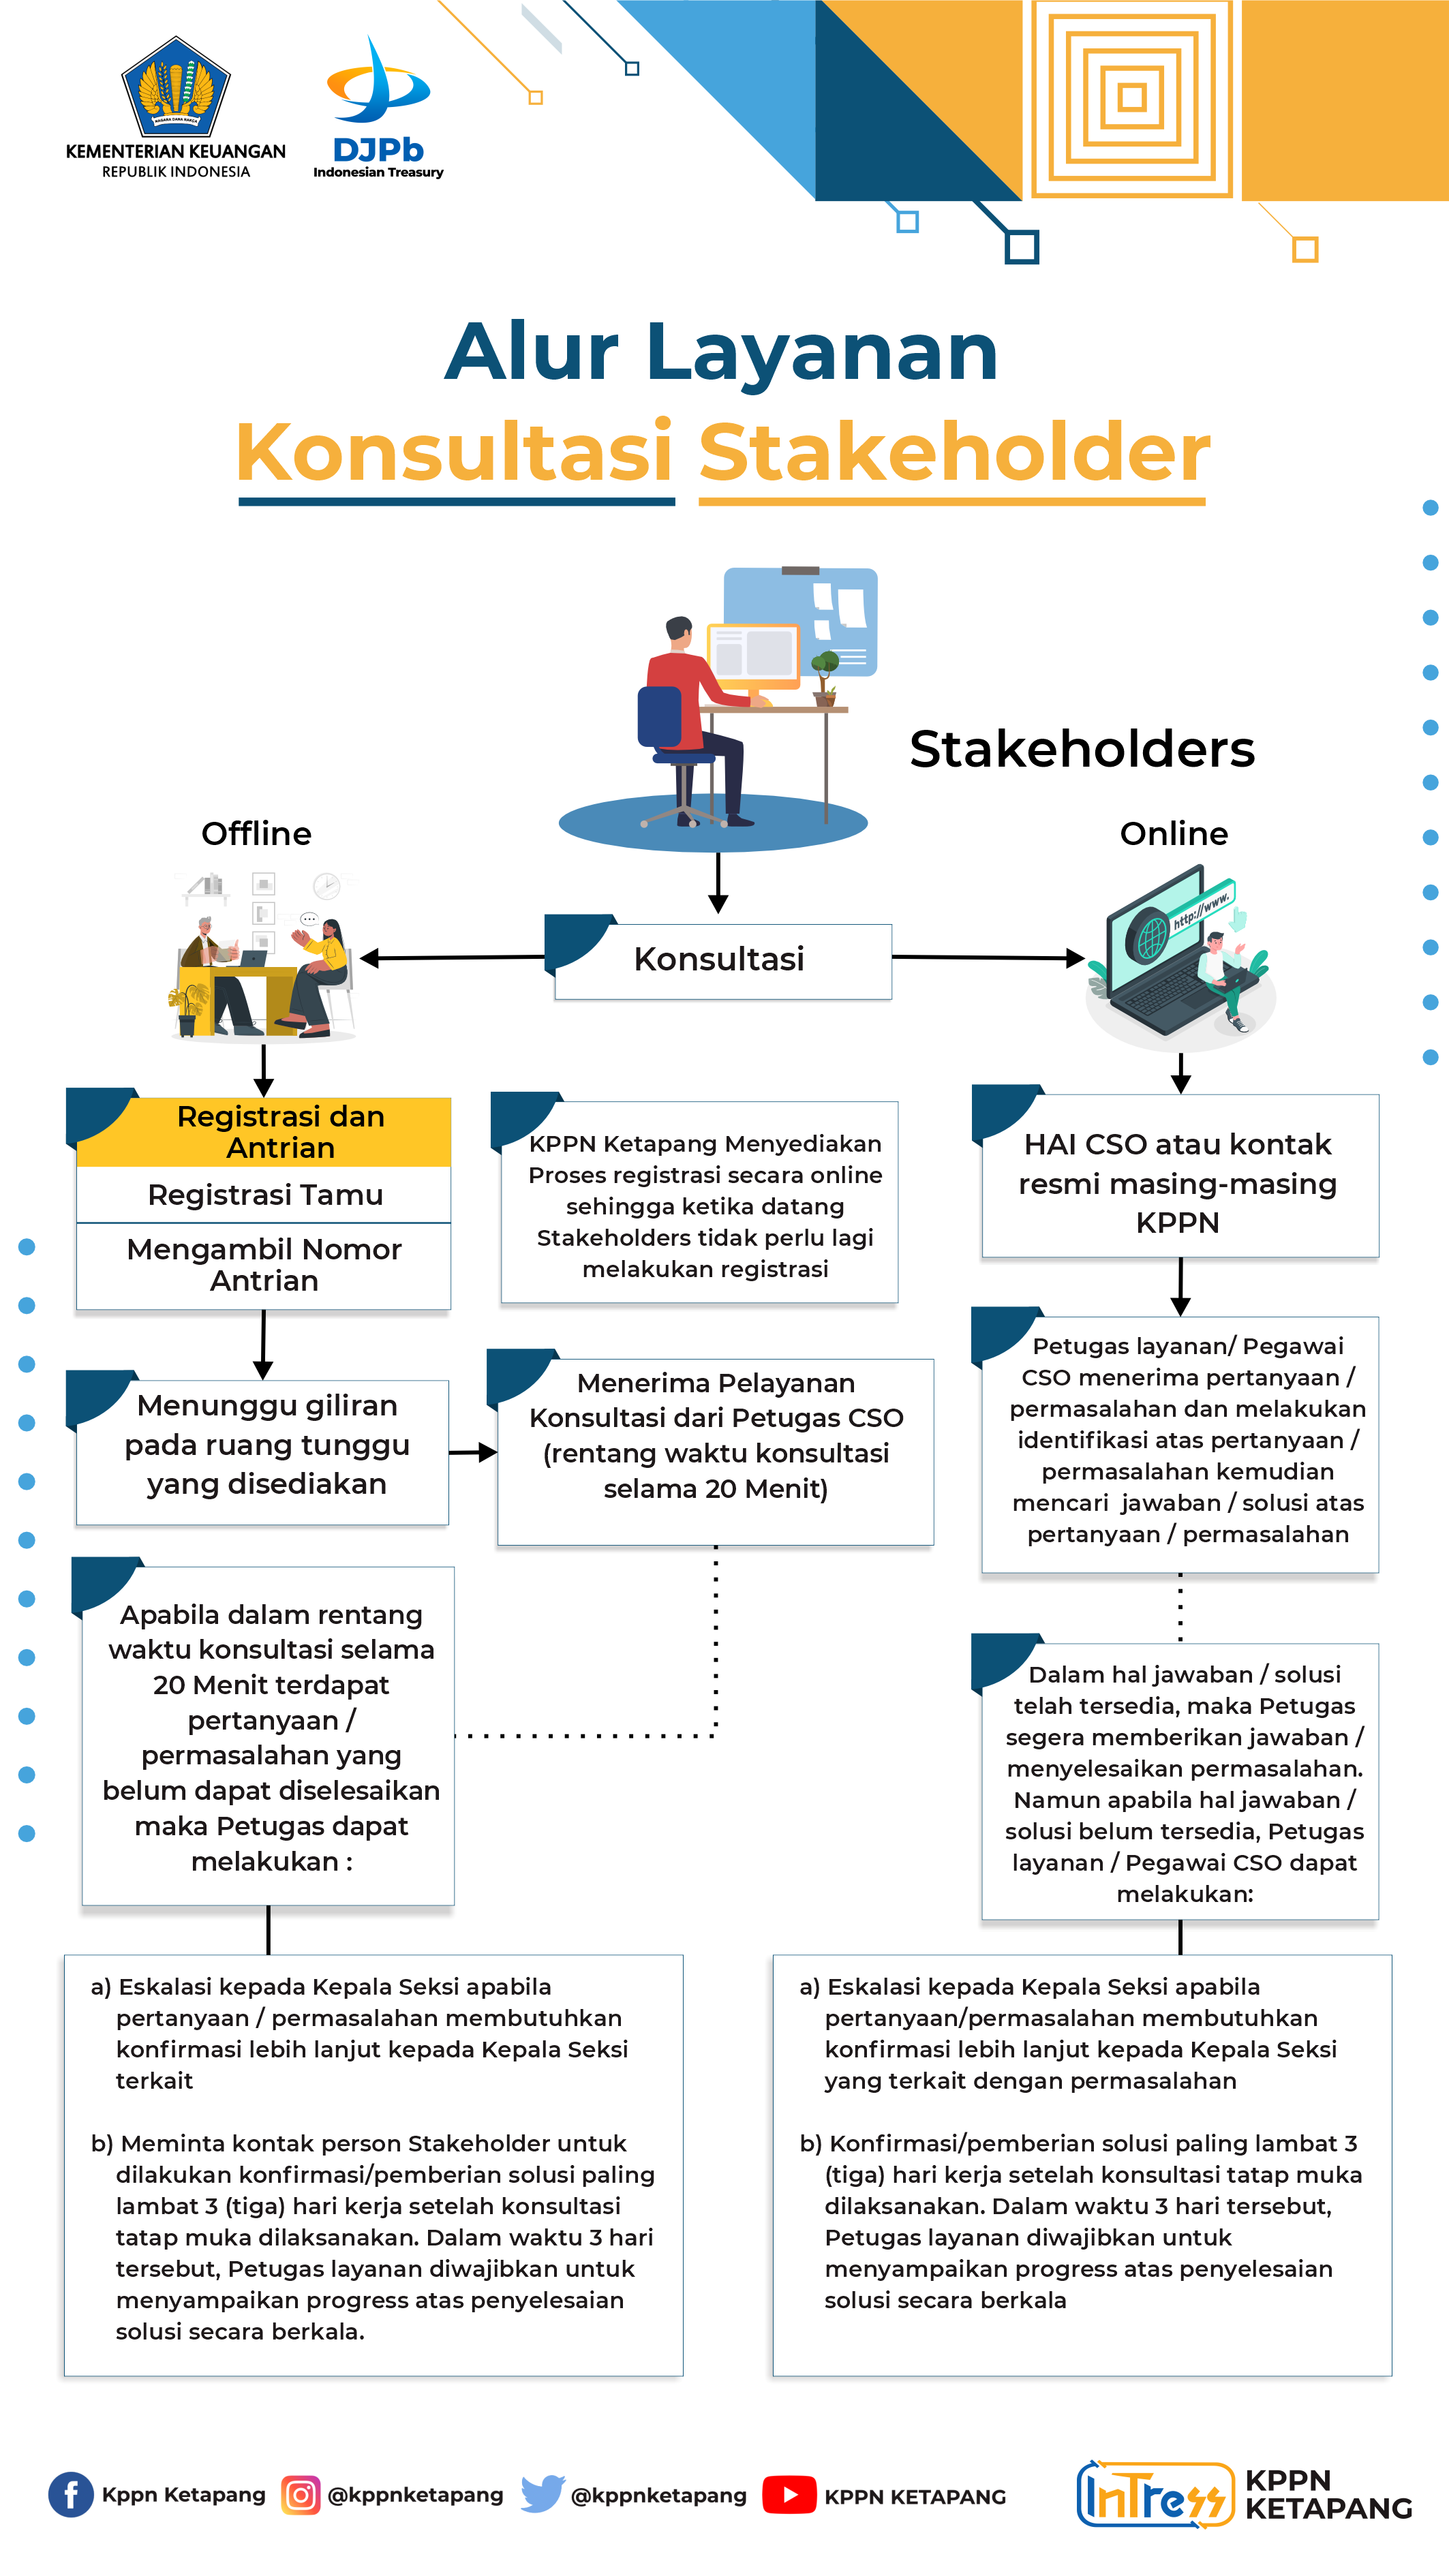 alur-layanan-konsultasi-stakeholder1.png